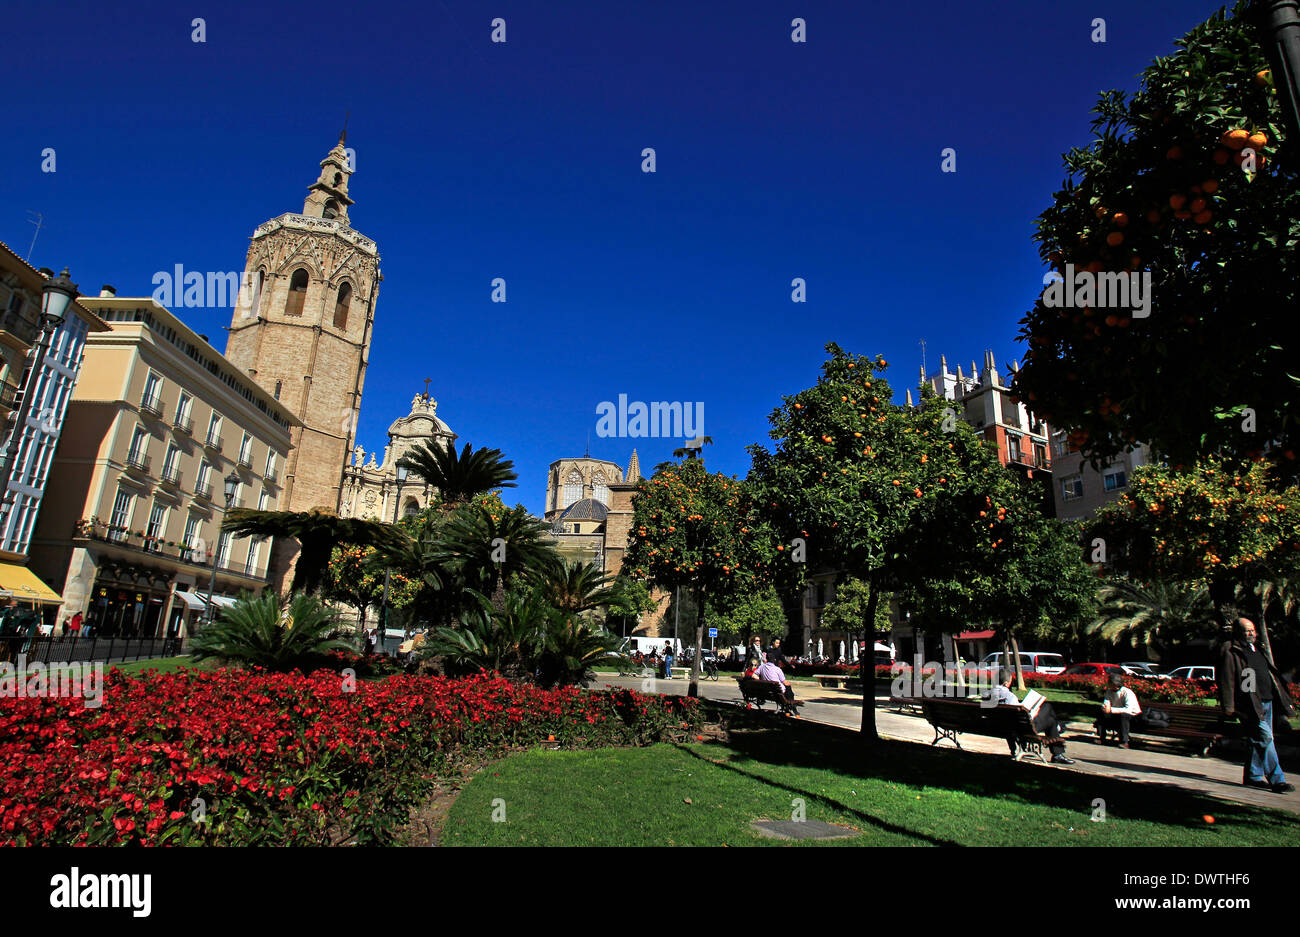 La Miguelete (le clocher de la cathédrale de Valence) donnant sur la Plaza de la Reina dans le centre de Valence, Espagne Banque D'Images